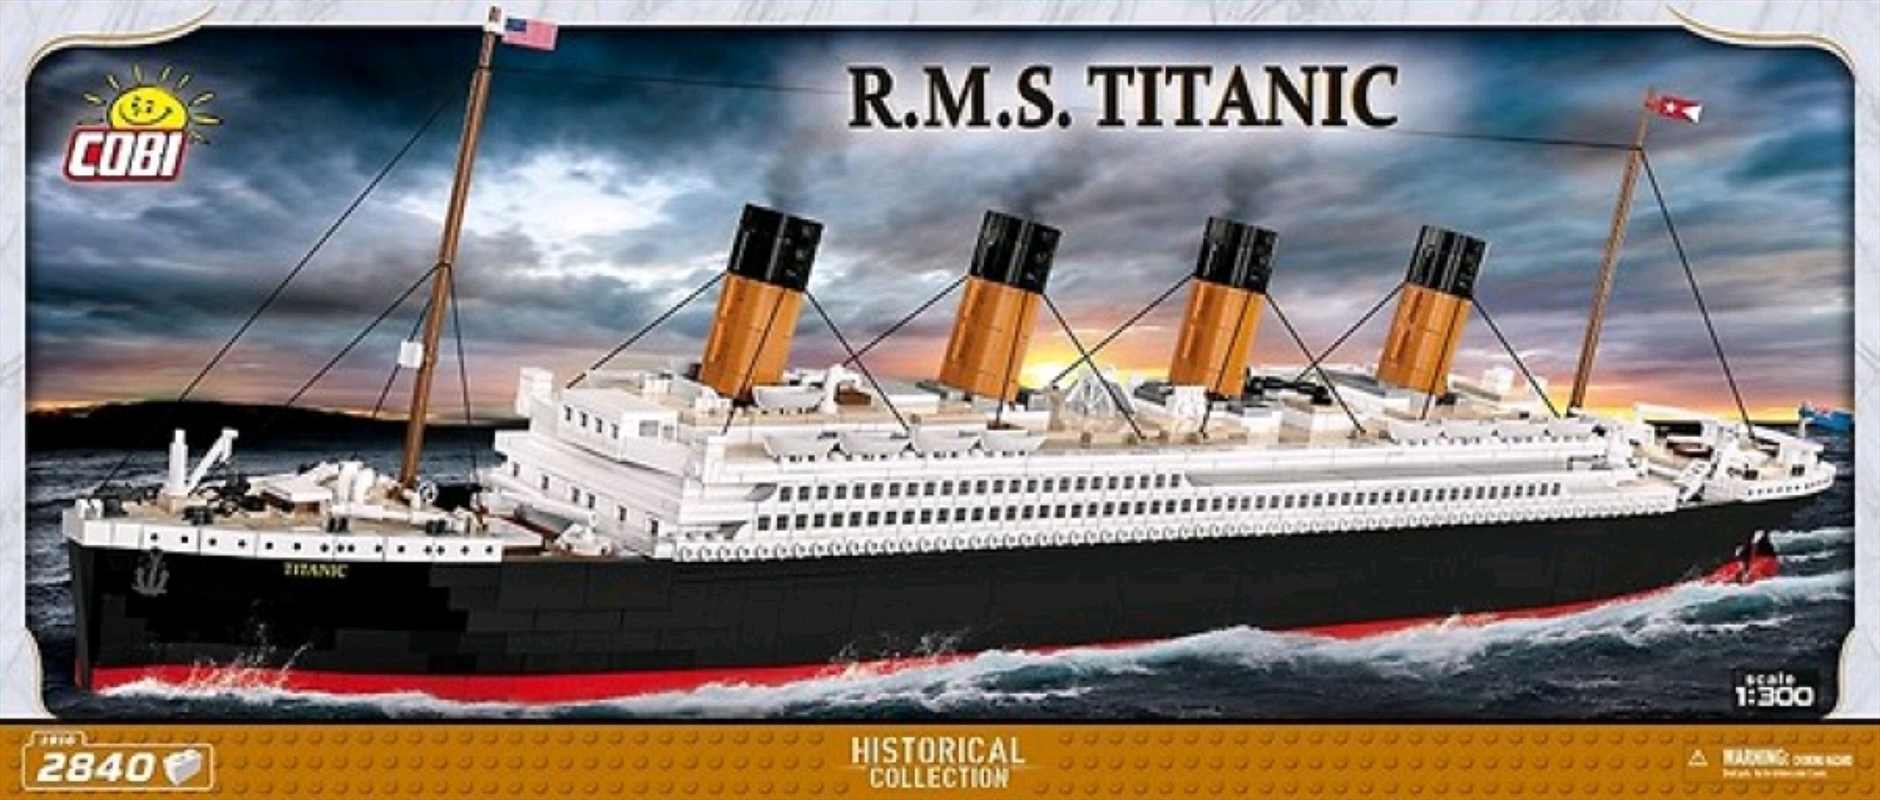 Titanic - R.M.S. Titanic 1:300 scale 2840 piece Construction Set/Product Detail/Building Sets & Blocks